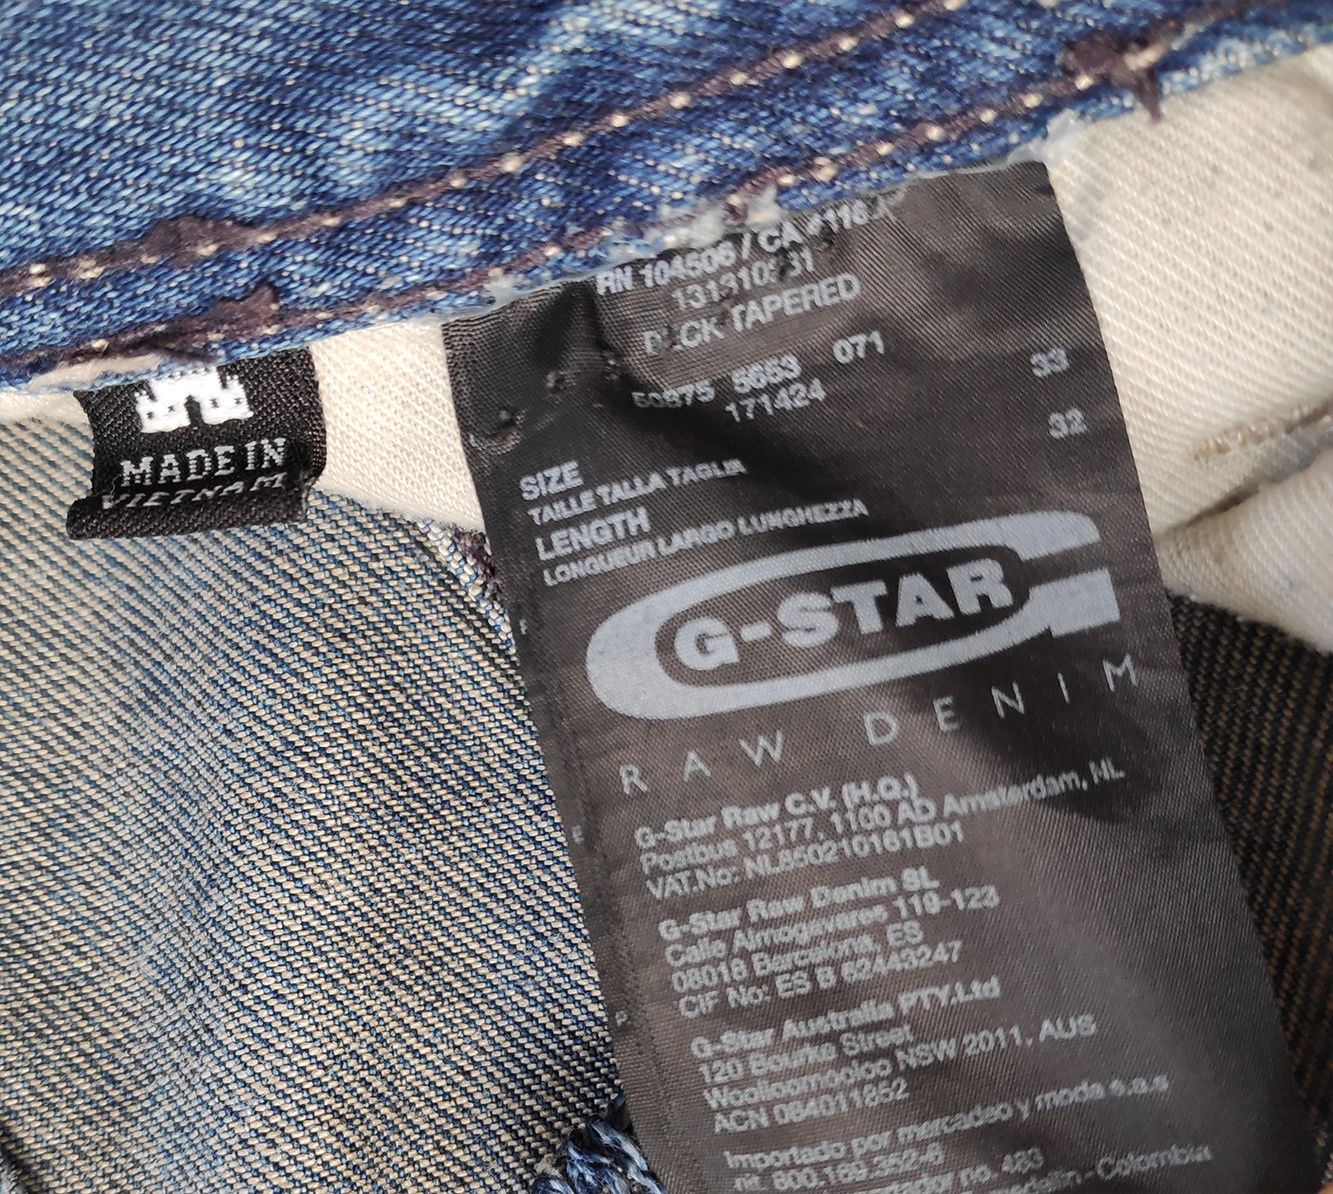 G-star raw deck tapered джинсы оригинал W33 L32